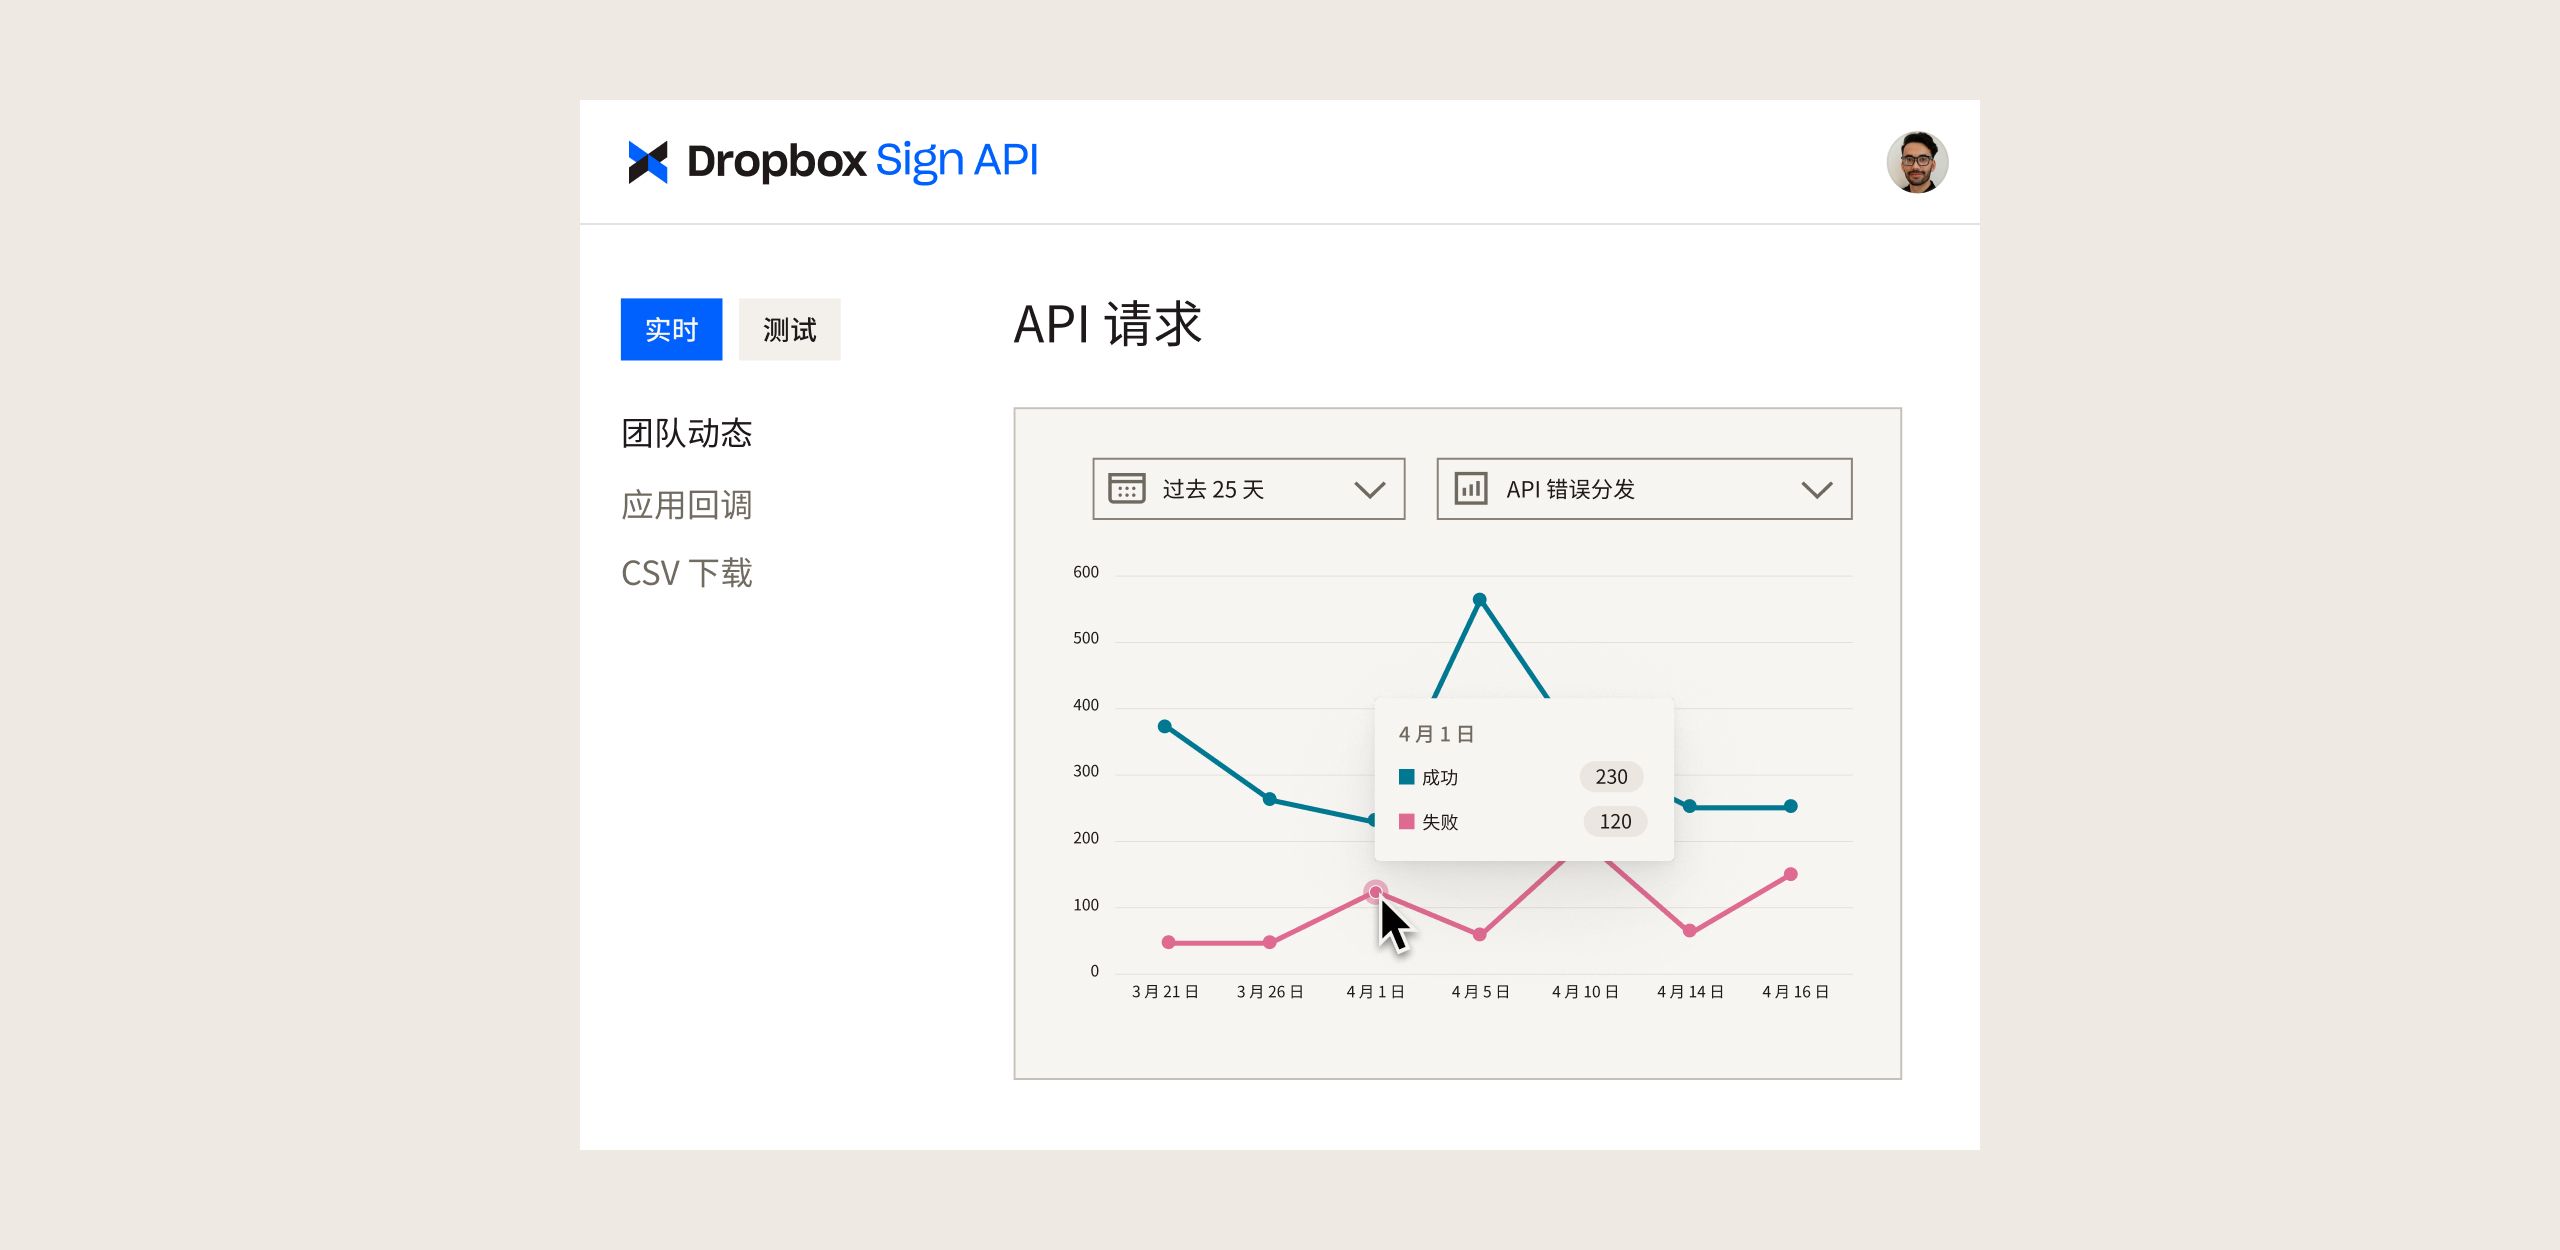 Dropbox Sign API 仪表板，其中包括显示随时间推移的 API 请求的图表